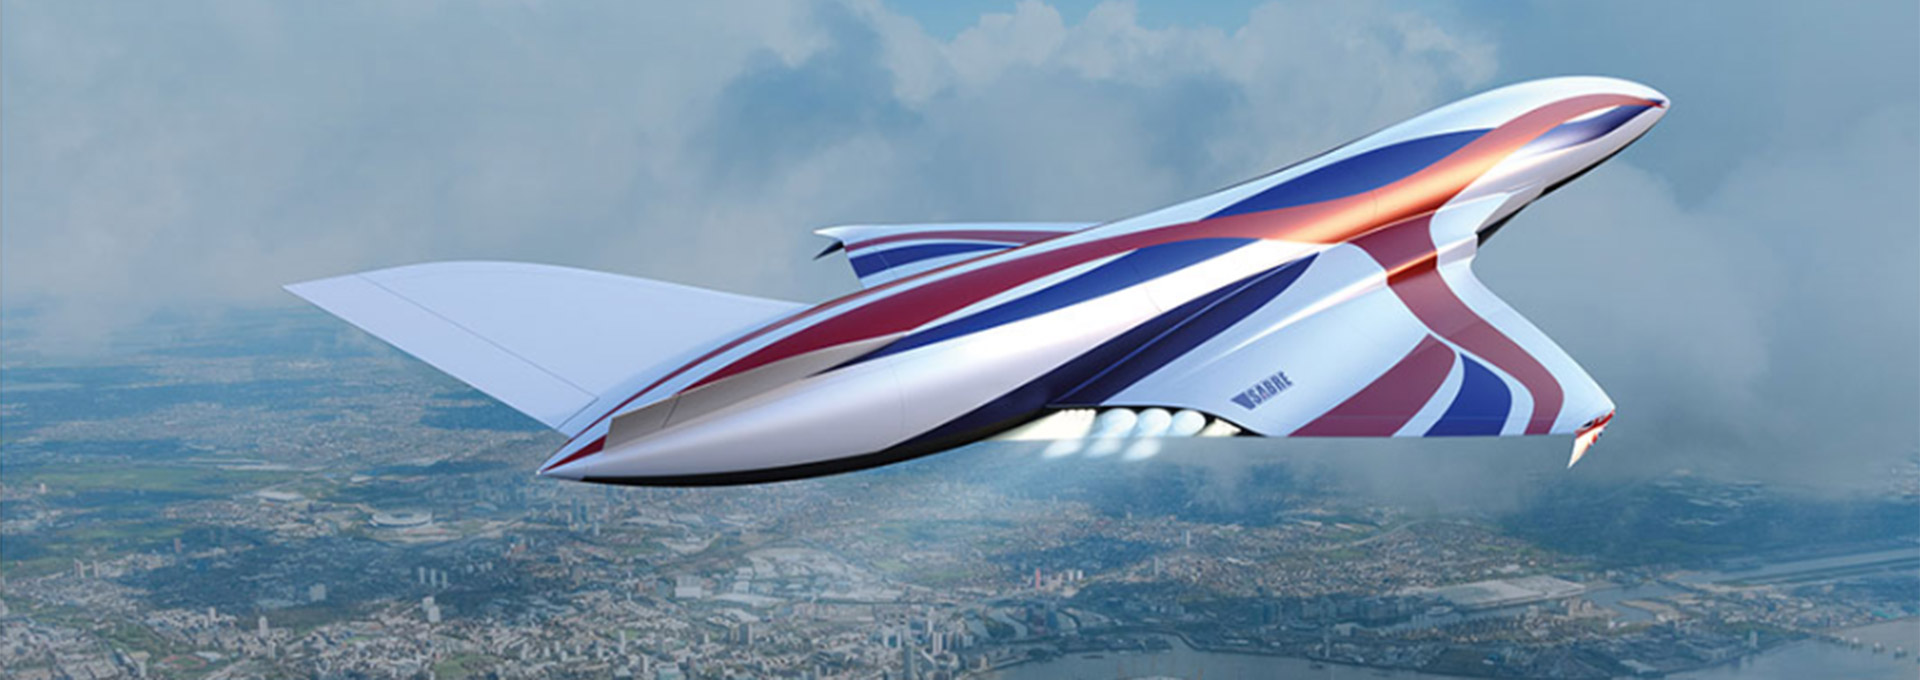 Londres-Sídney en cuatro horas: la aviación que quiere superar al Concorde